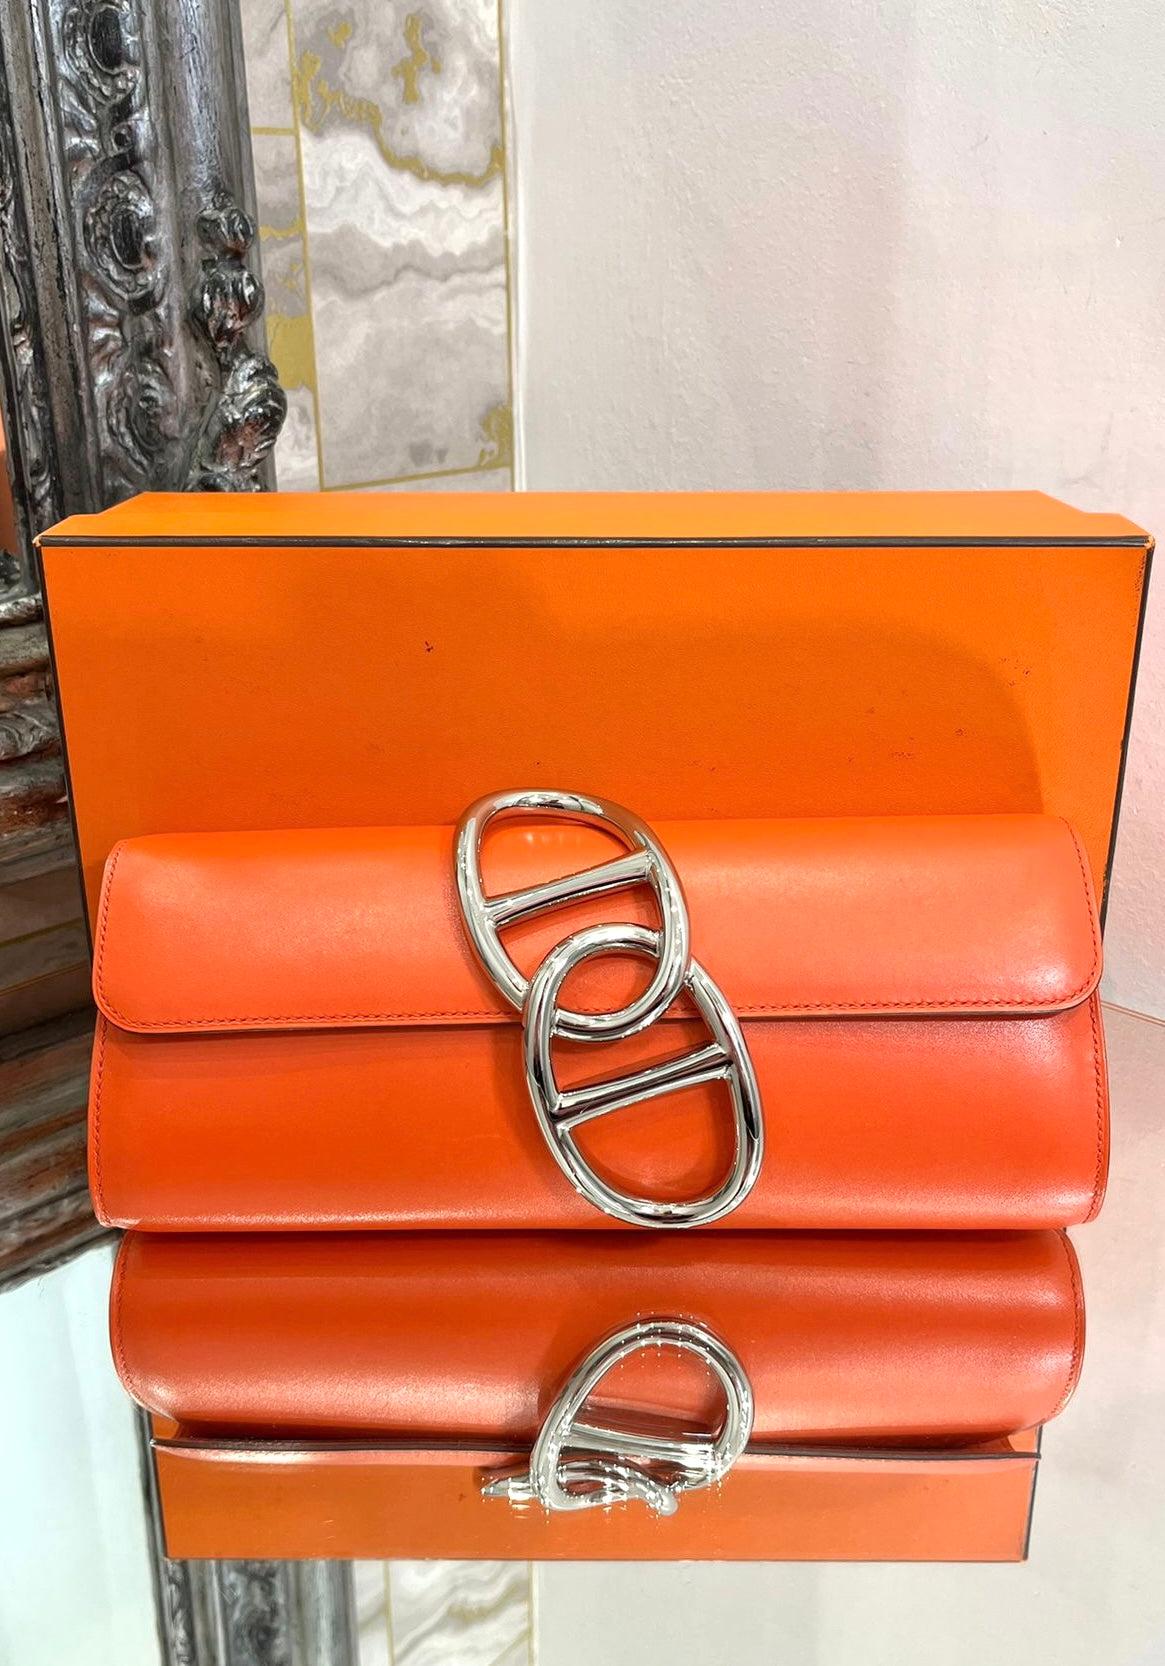 Hermes Egee Leder Clutch Tasche

Hermes berühmte orangefarbene, zylinderförmige Tasche mit ikonischer Palladiumbeschichtung

charakteristisches Merkmal der Chaine D'Ancre auf der Vorderseite. Datumscode 2016.

Größe - Höhe 10cm, Breite 25cm, Tiefe